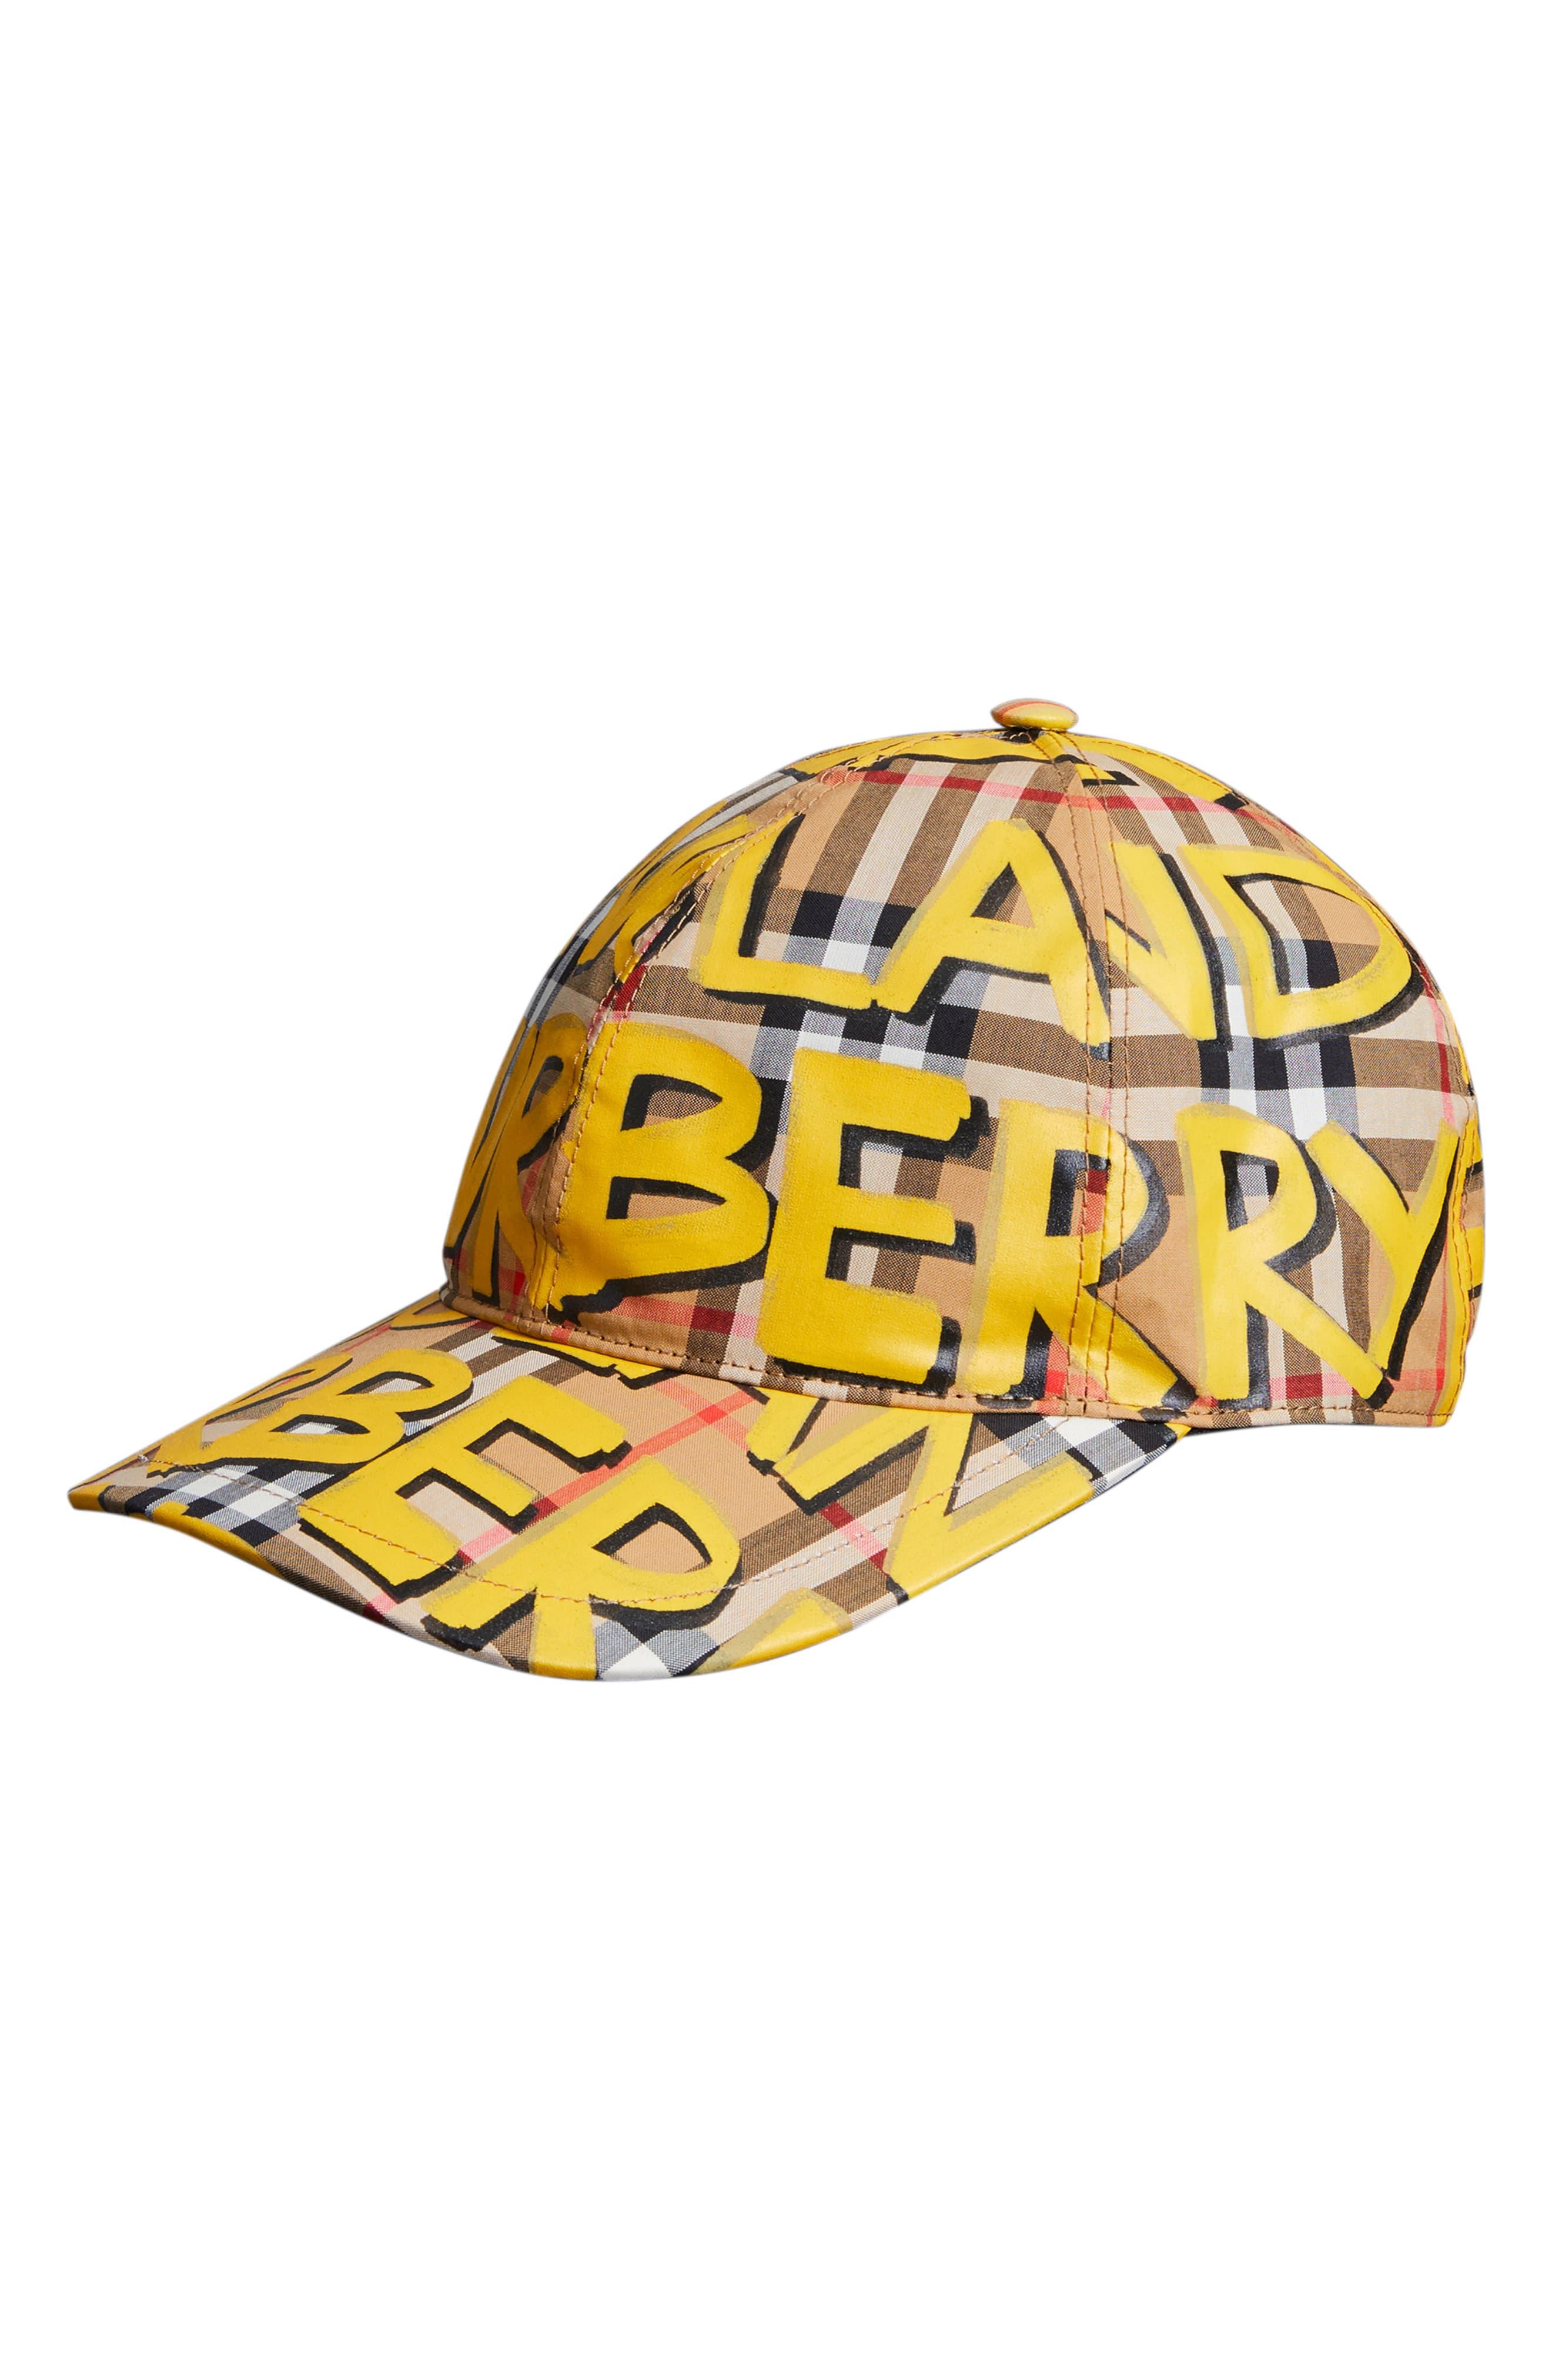 burberry graffiti cap